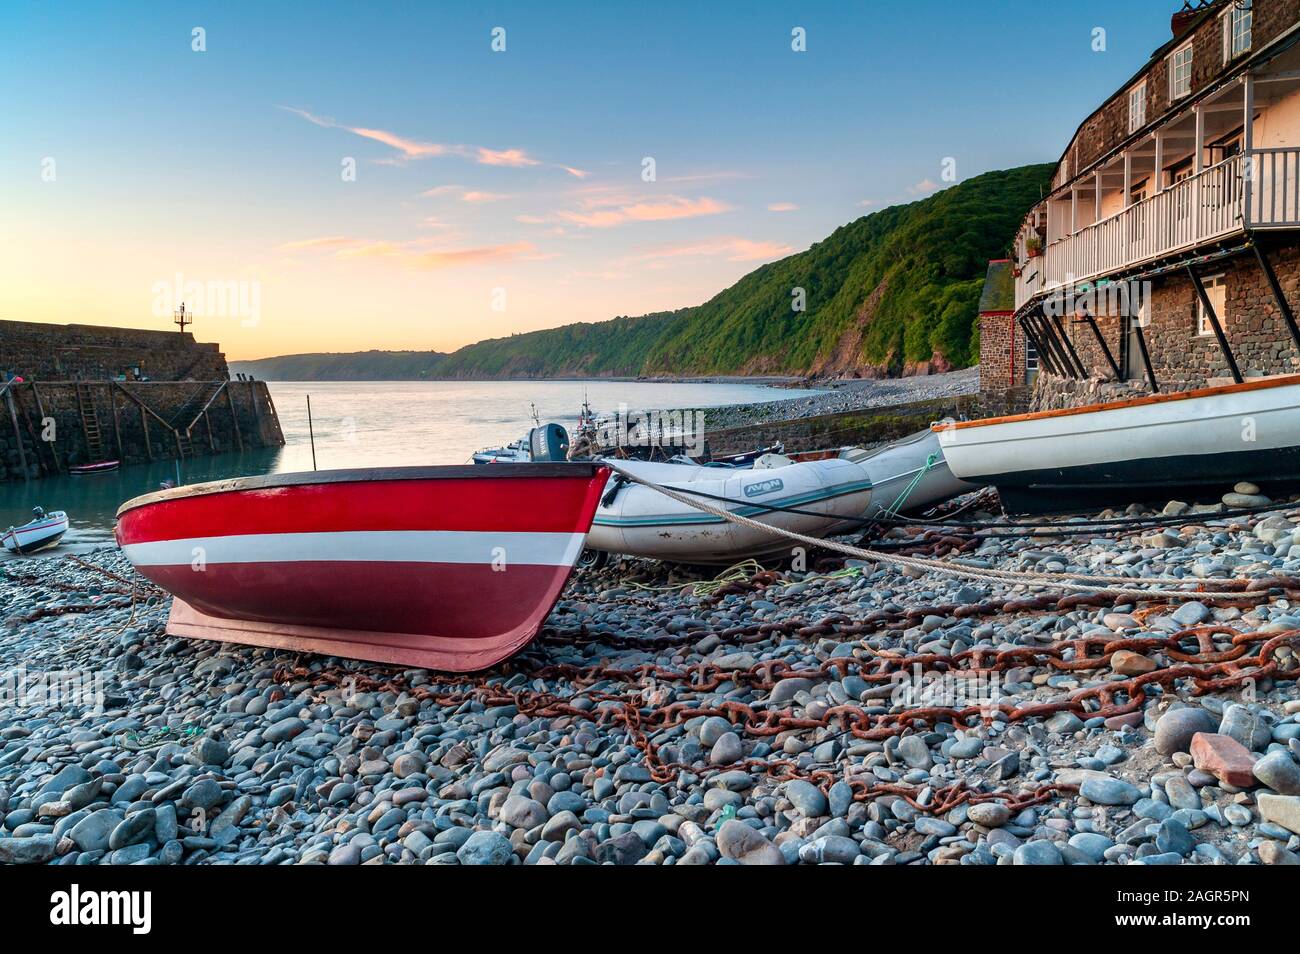 Bateau rouge et blanc amarré sur la plage de galets au village de pêcheurs de Clovelly, avec des bâtiments et des falaises et le port en arrière-plan, Sud-Ouest. Banque D'Images